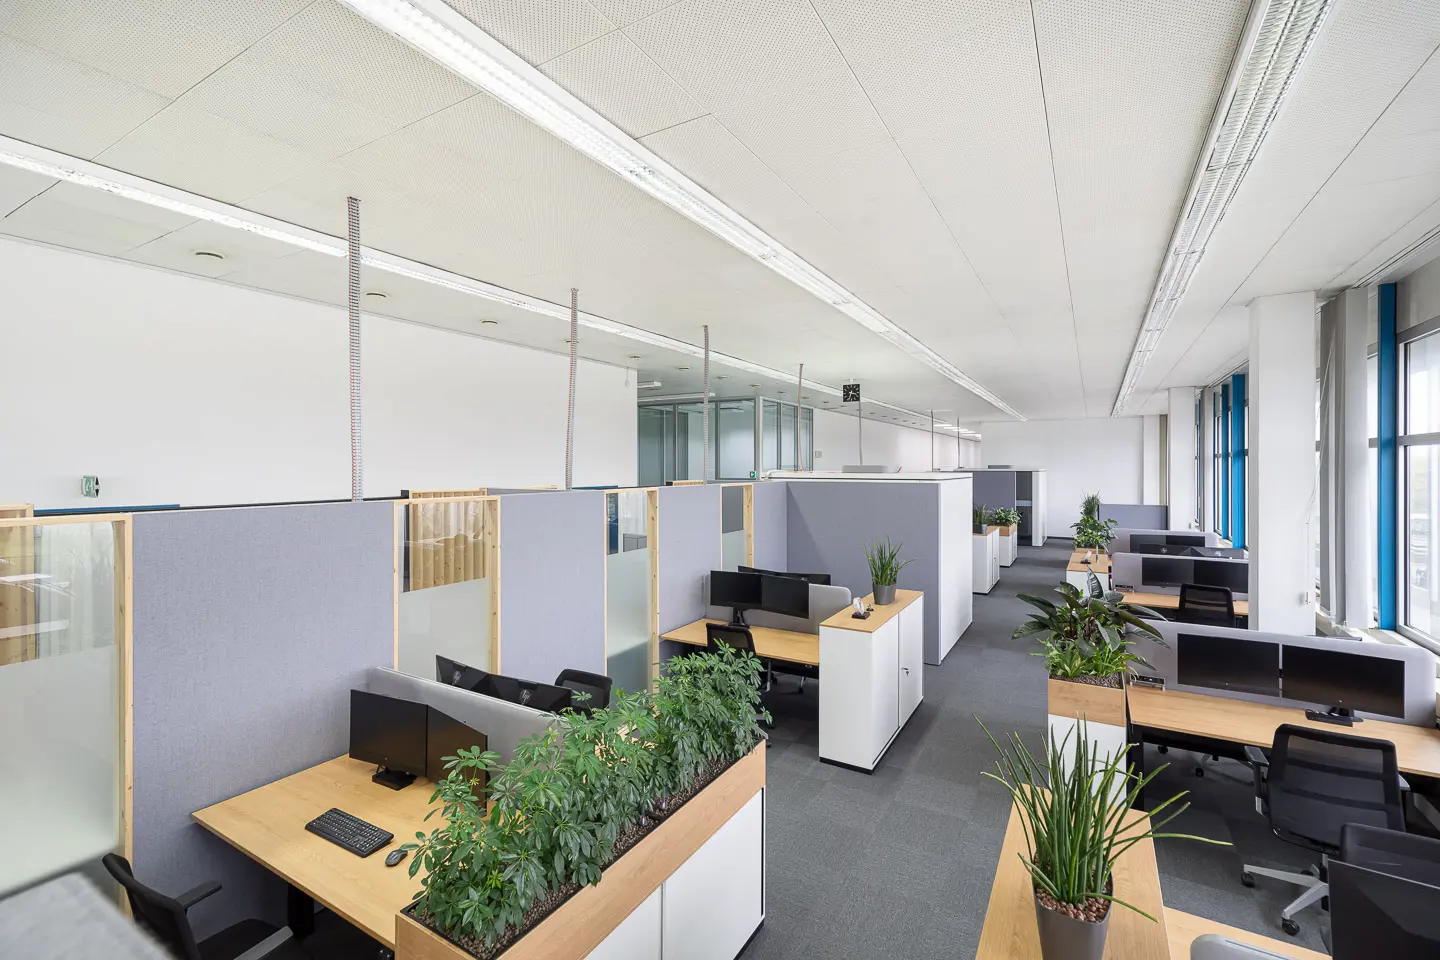 Ein Großraumbüro mit minimalistischen Stil, Pflanzen und mehreren Büroarbeitsplätzen.